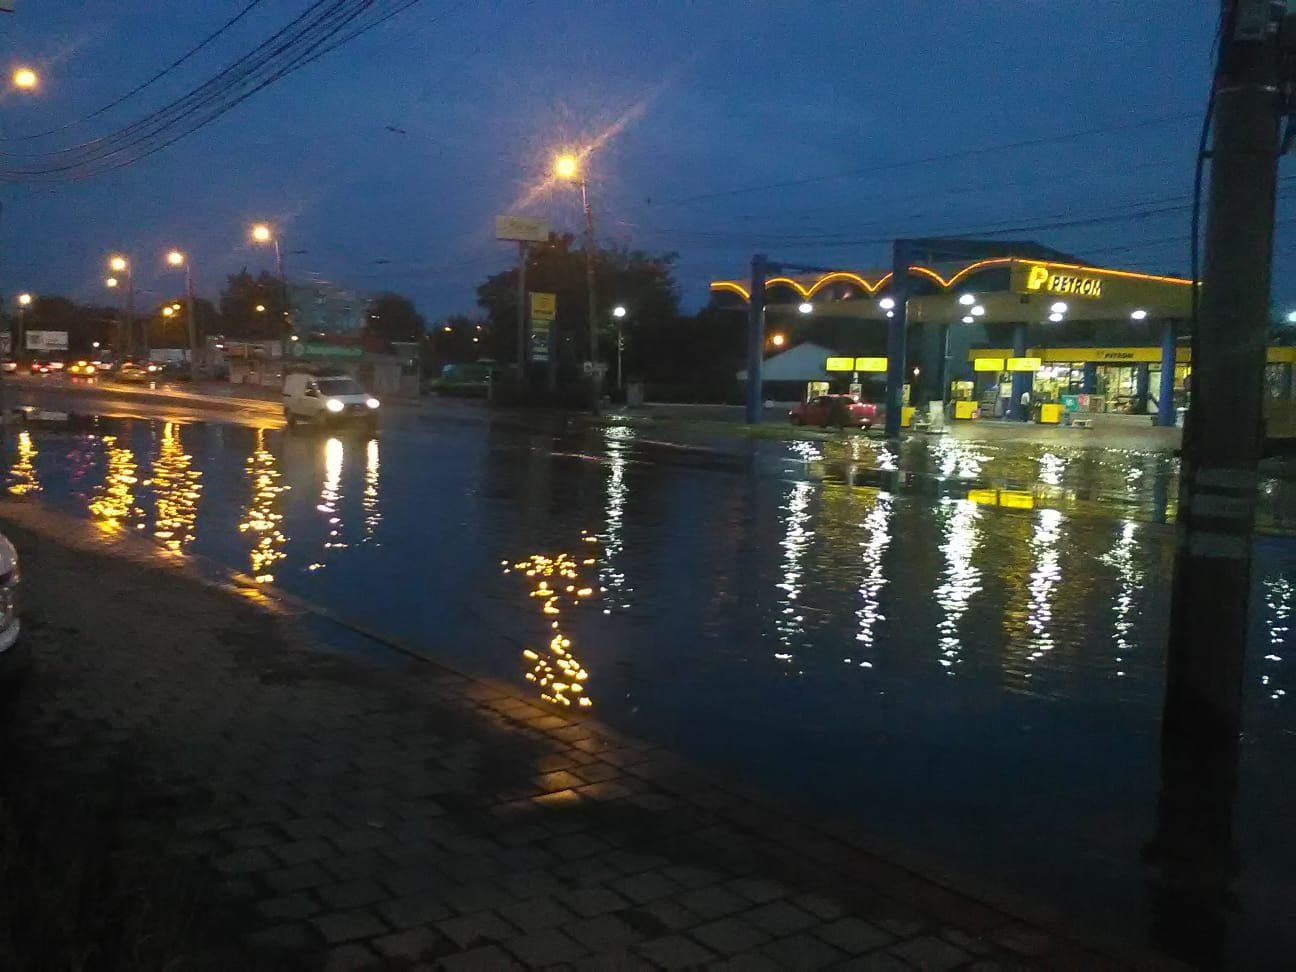  VIDEO&FOTO: Pasajul Galata rămâne închis, apa încă băltește pe străzi